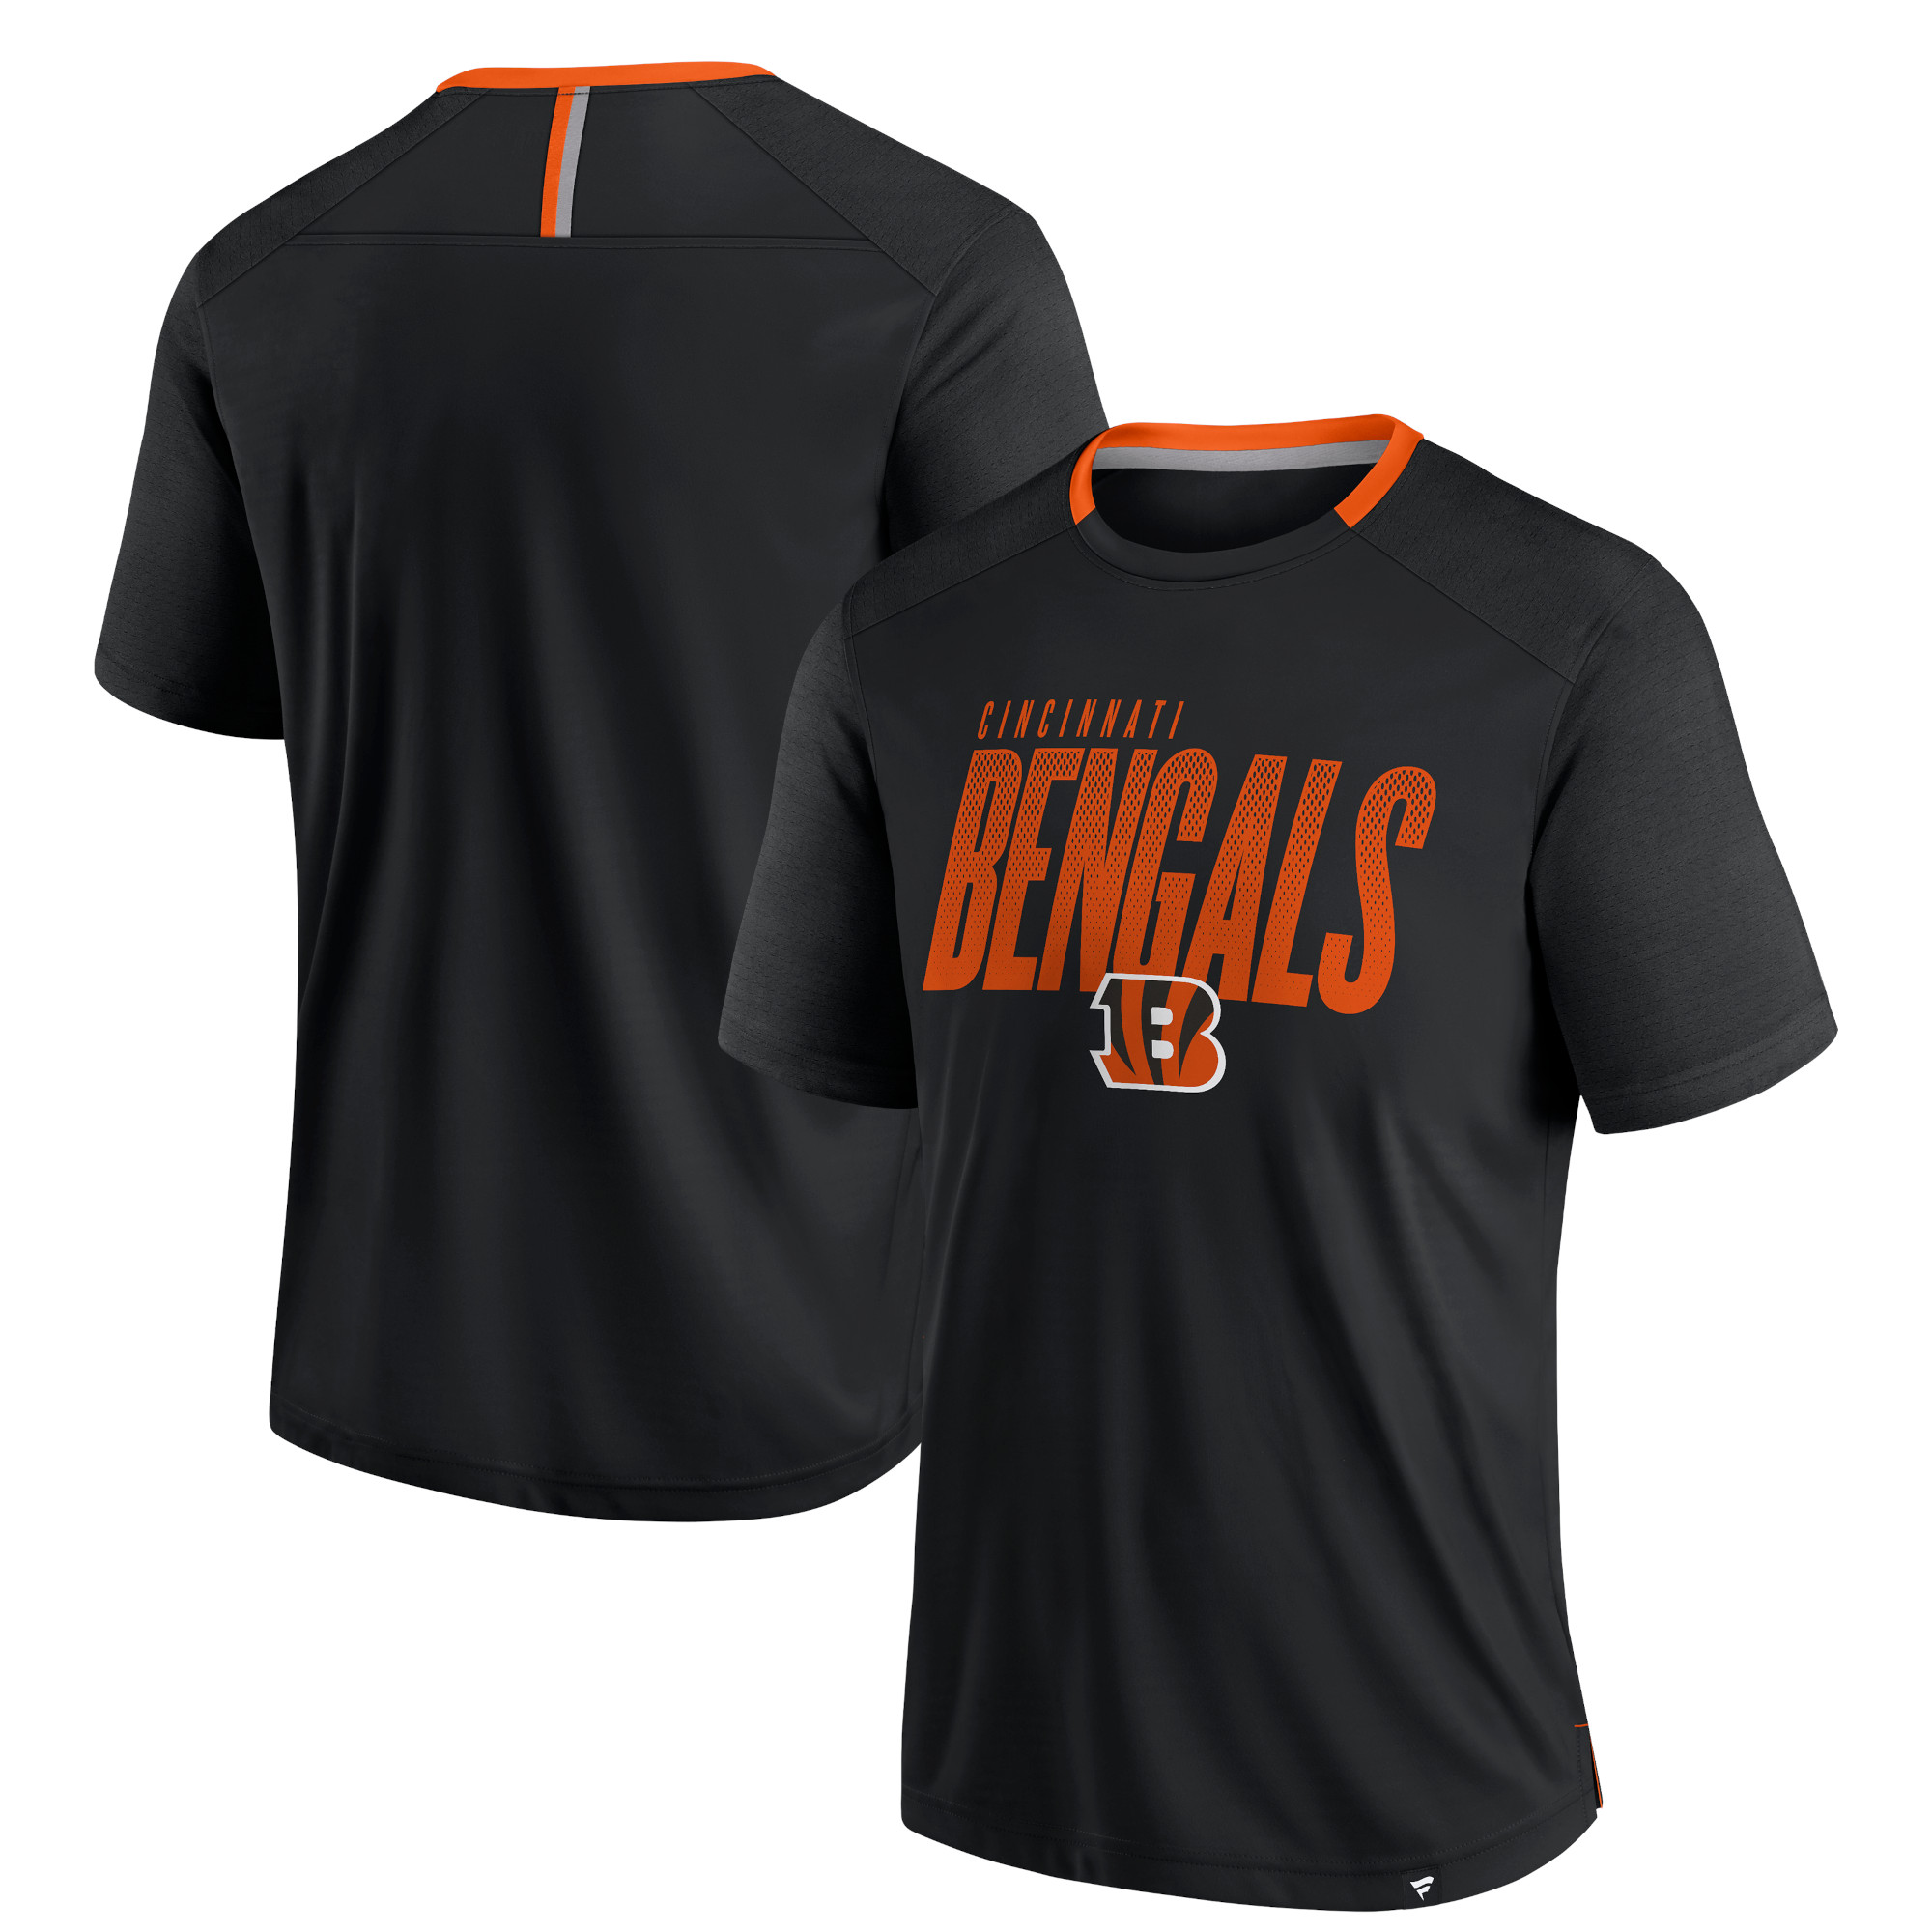 Cincinnati Bengals Defender Fade Dot Slant T-Shirt – Herren